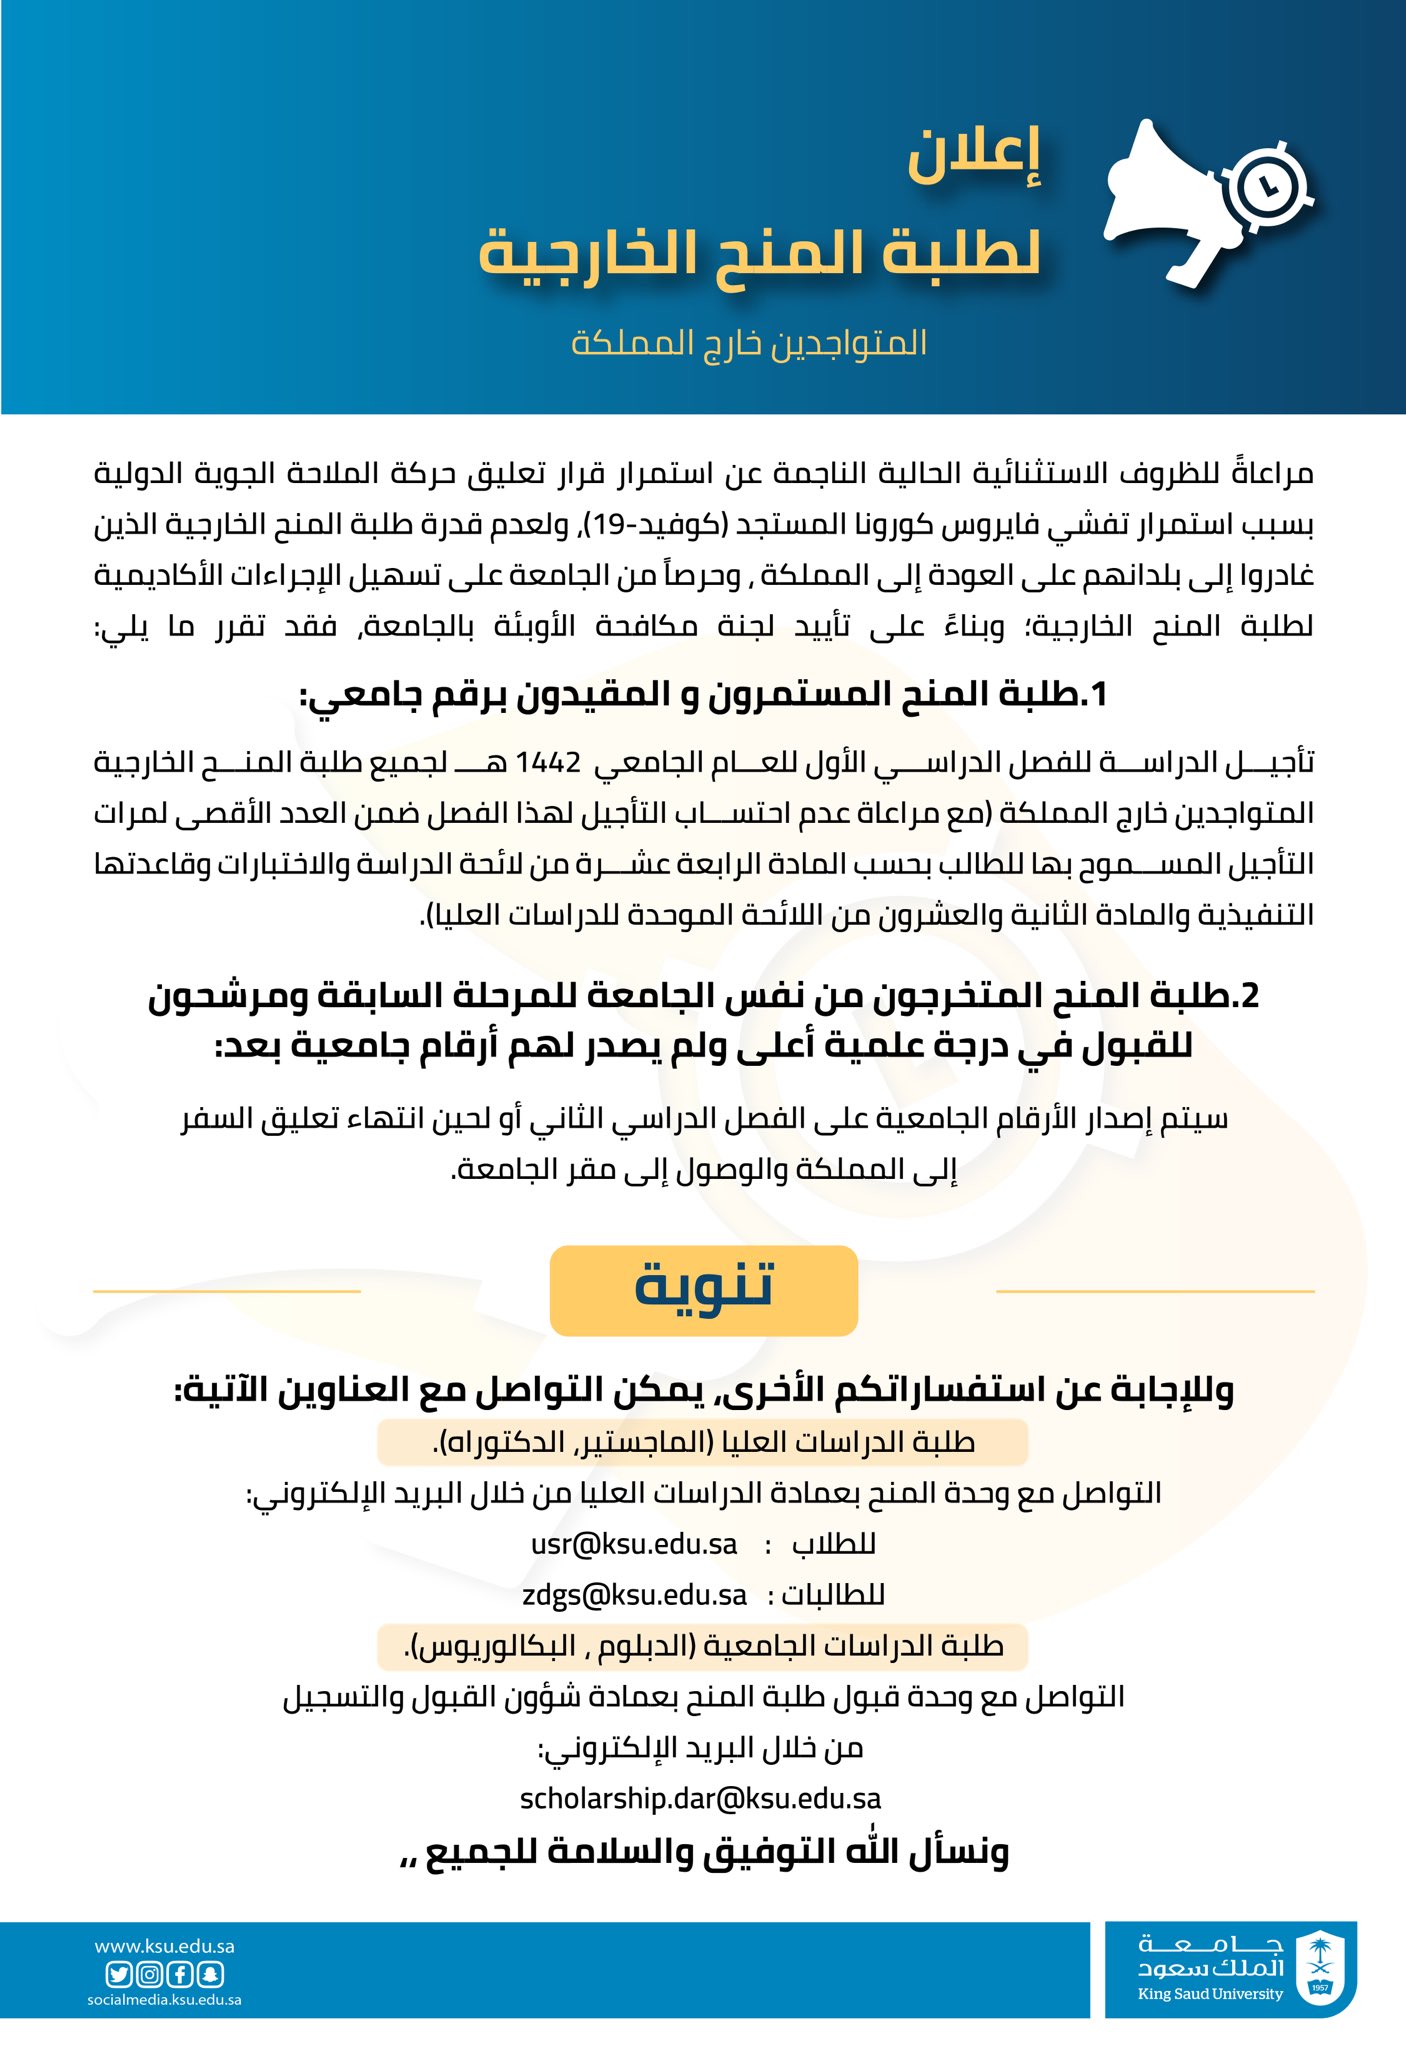 الخدمات الالكترونية جامعة الملك سعود